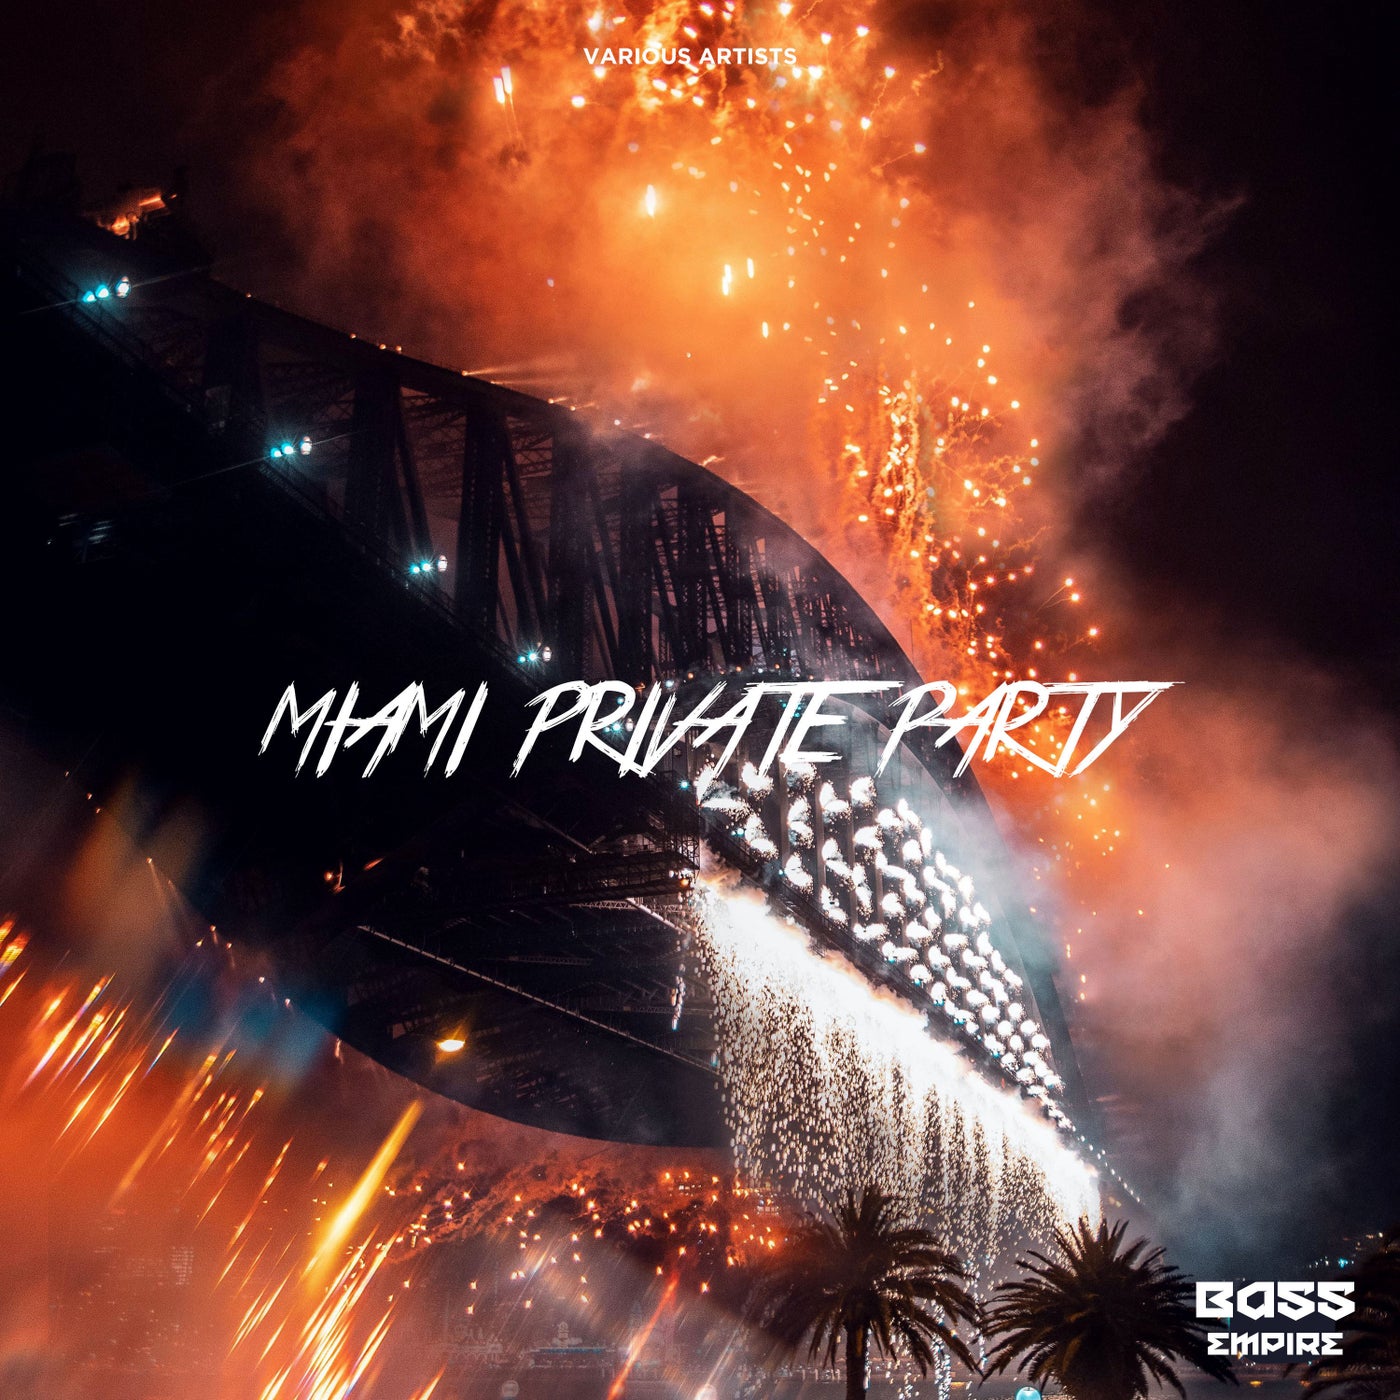 Miami Private Party